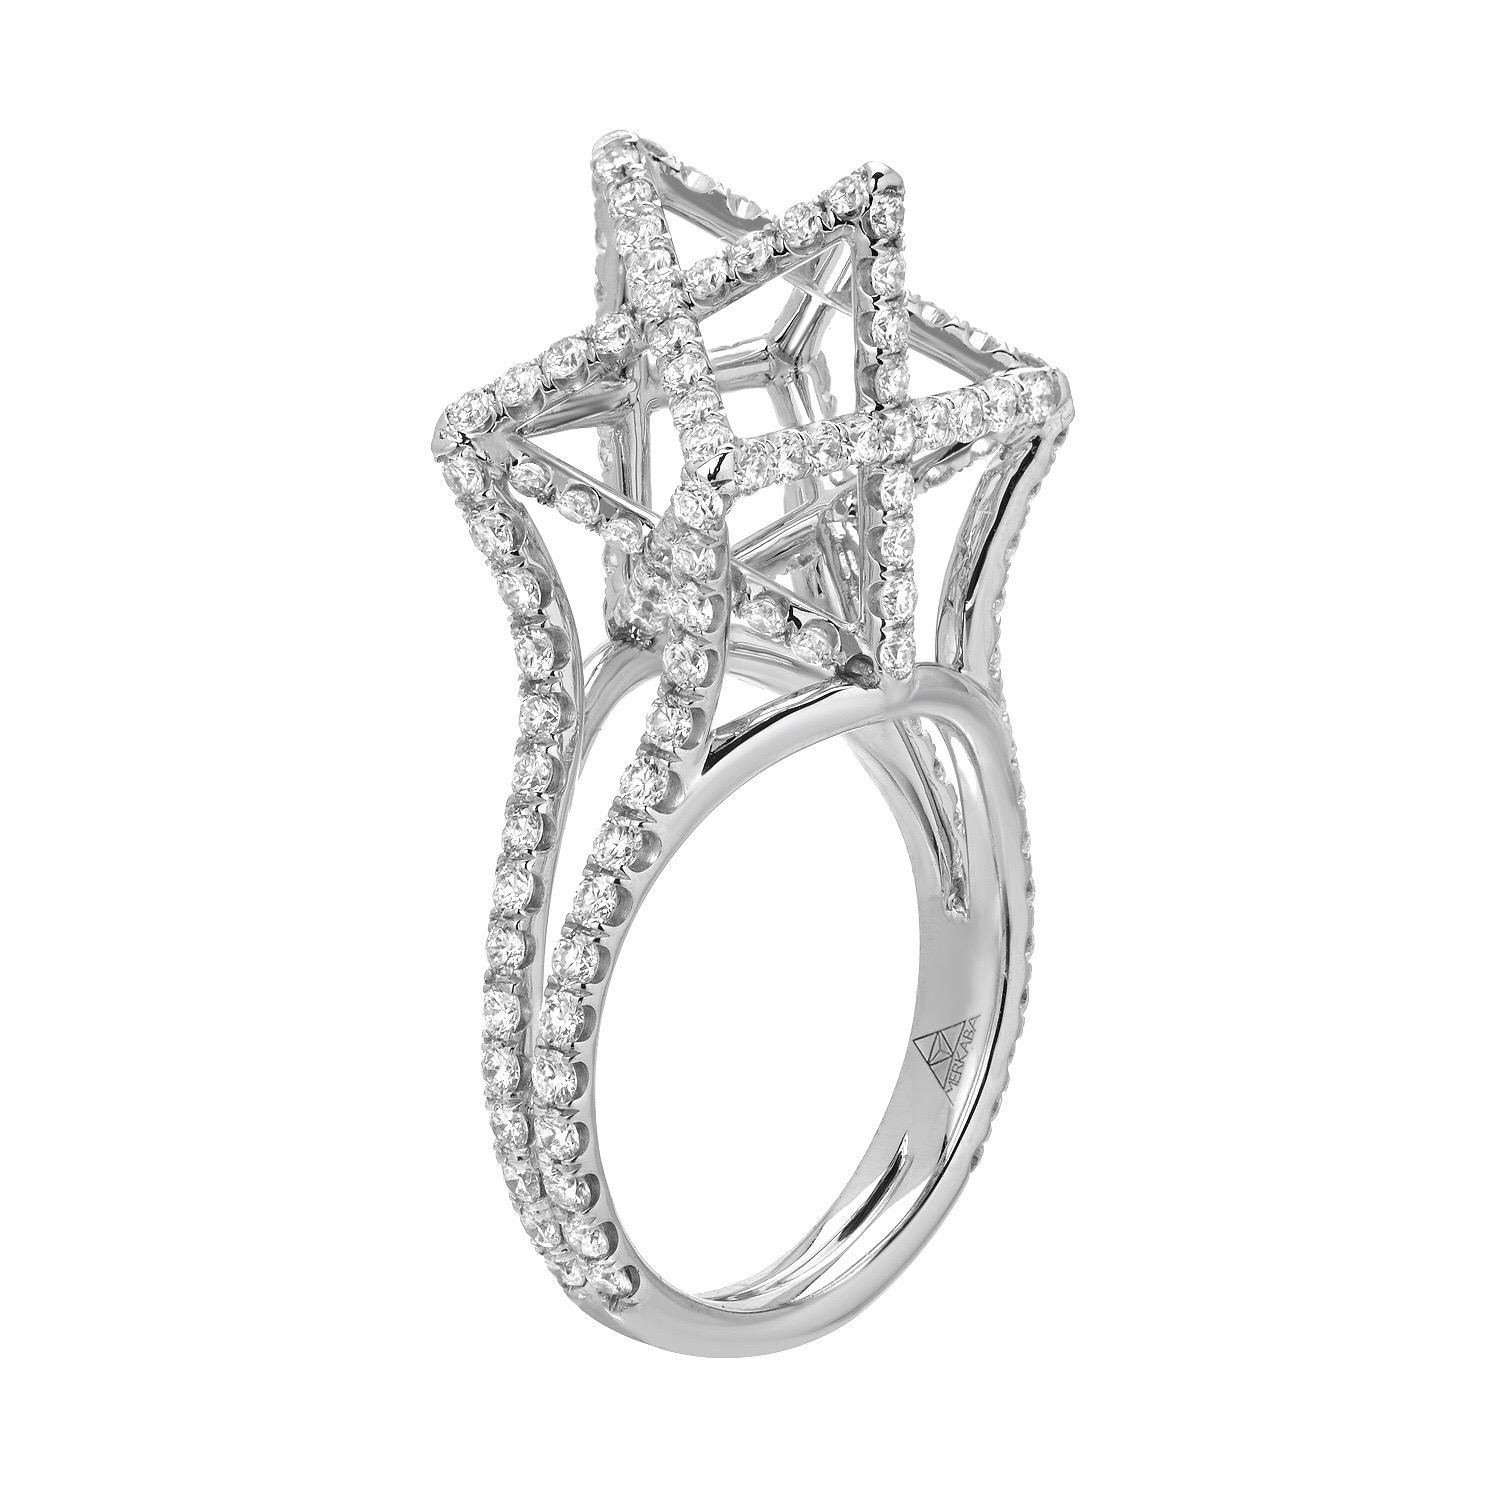 Architektonischer Merkaba Star Platin-Diamantring, mit insgesamt ca. 2,02 Karat runden Brillanten, Farbe F-G und Reinheit VVS2-VS1. Dieses dramatische Ringdesign erstreckt sich von der Hand nach oben, 0,53 Zoll, ein atemberaubendes dreidimensionales